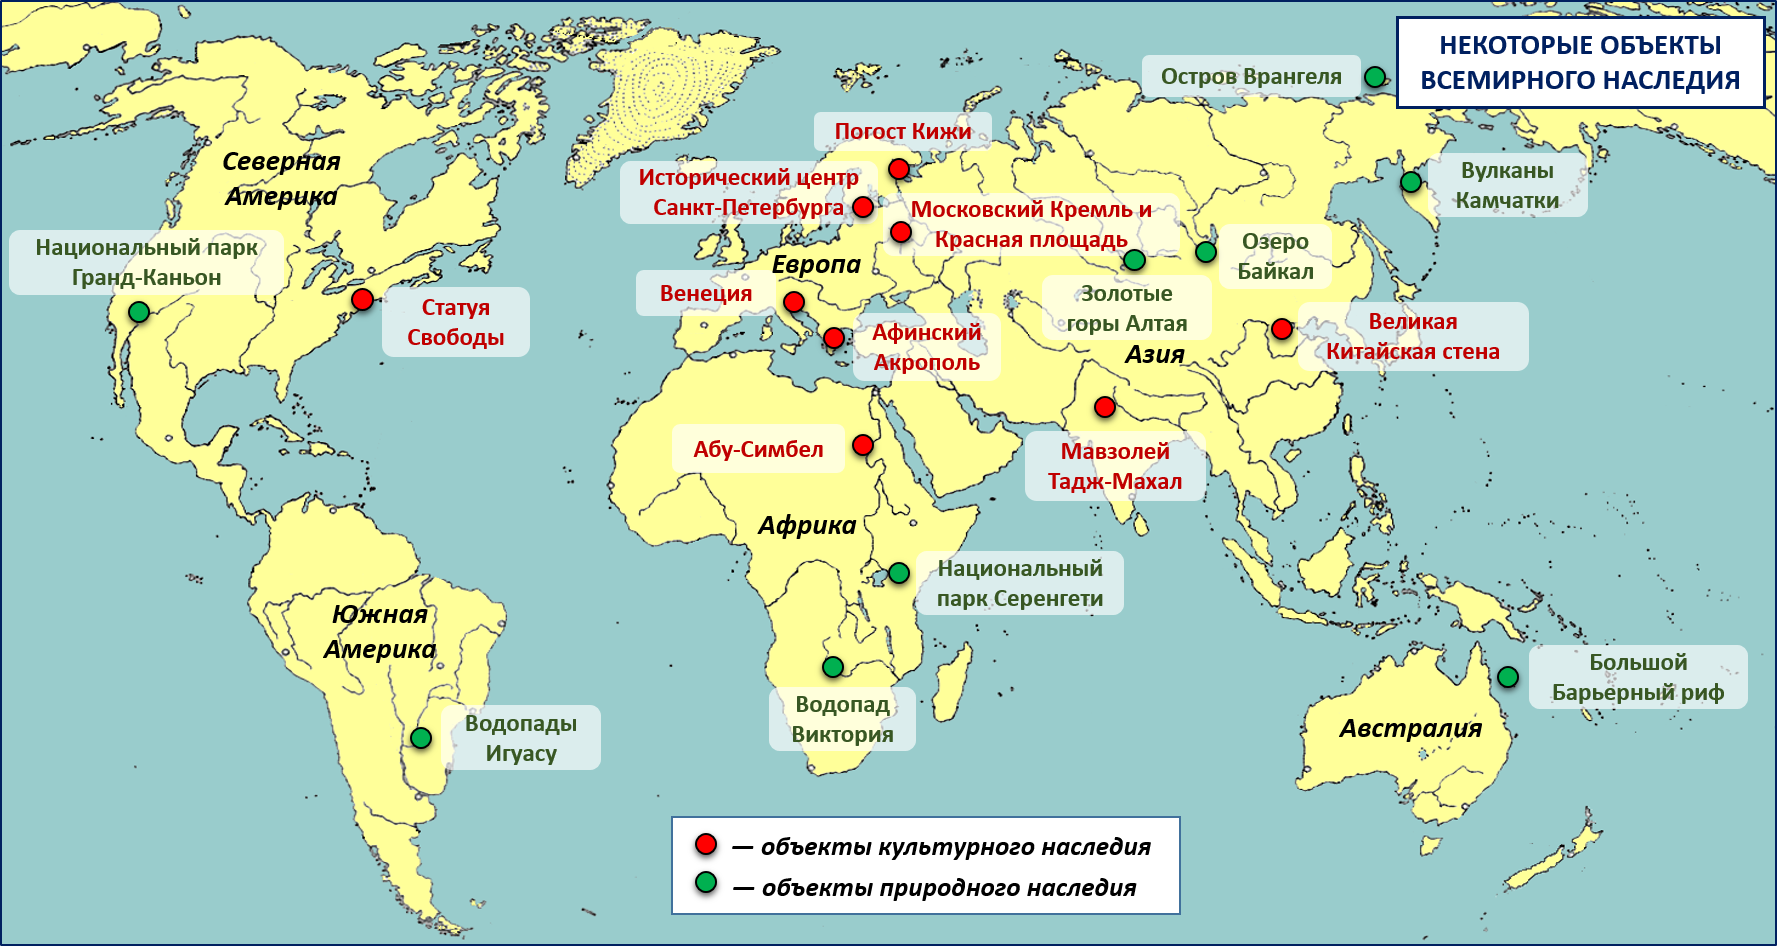 Местоположение государства. Объекты Всемирного наследия ЮНЕСКО В мире таблица. Карта объектов Всемирного наследия ЮНЕСКО В мире. Объекты Всемирного природного наследия ЮНЕСКО на карте.